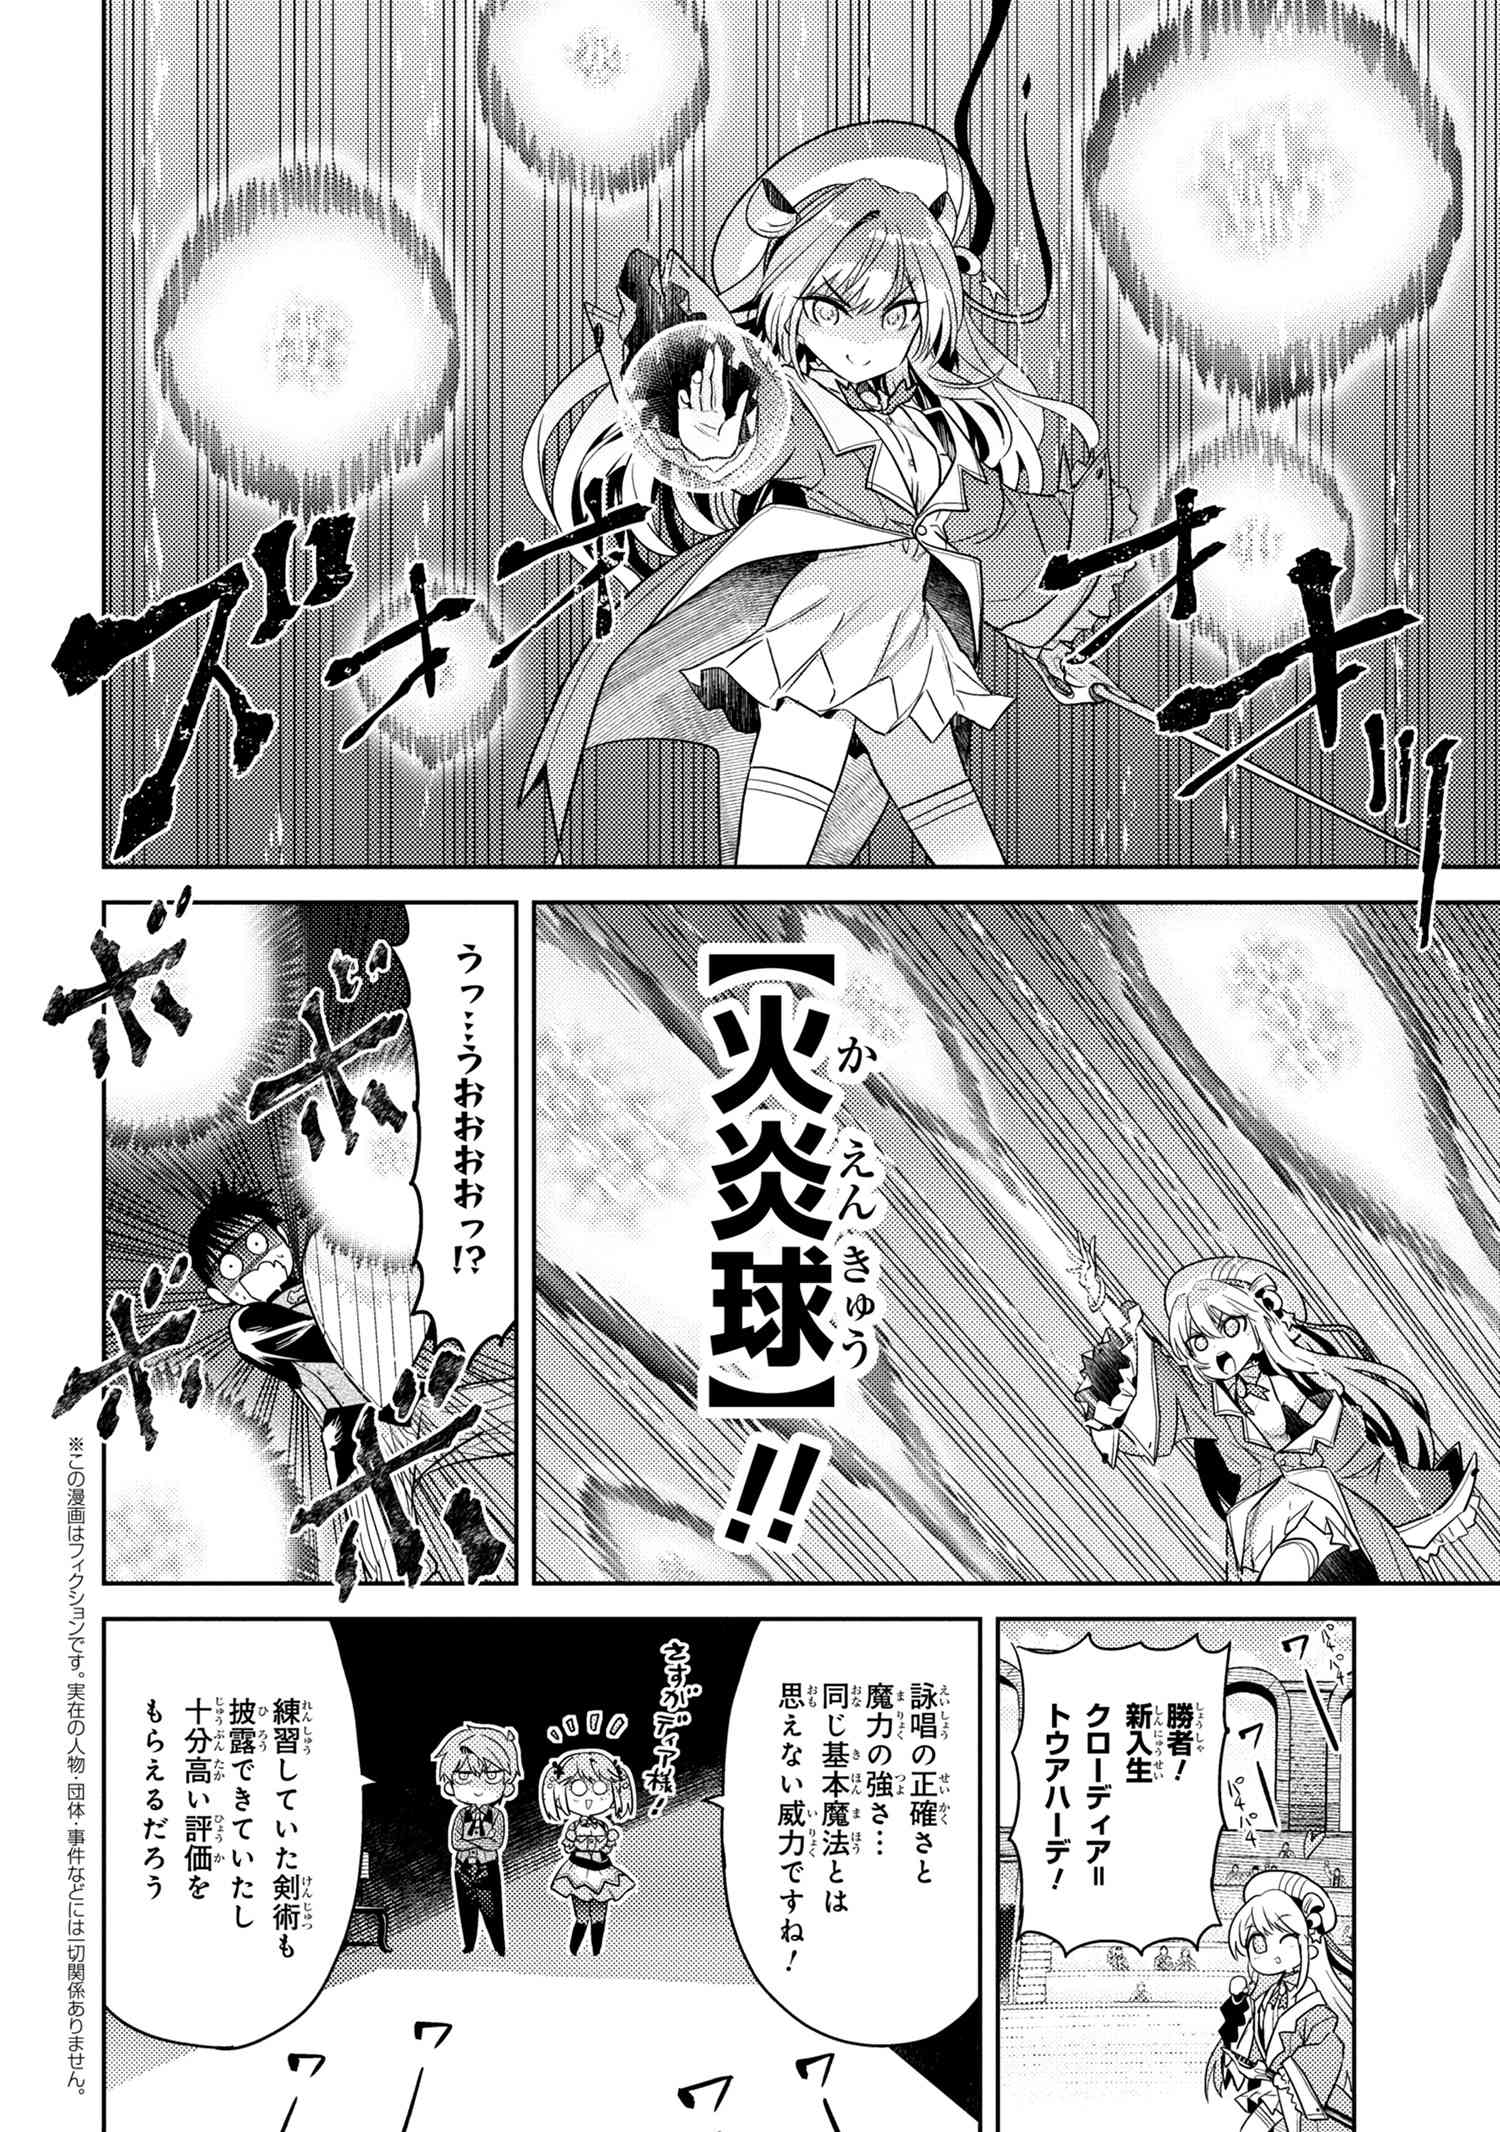 Read Sekai Saikyou no Assassin, isekai kizoku ni tensei suru 12.1 - Oni Scan